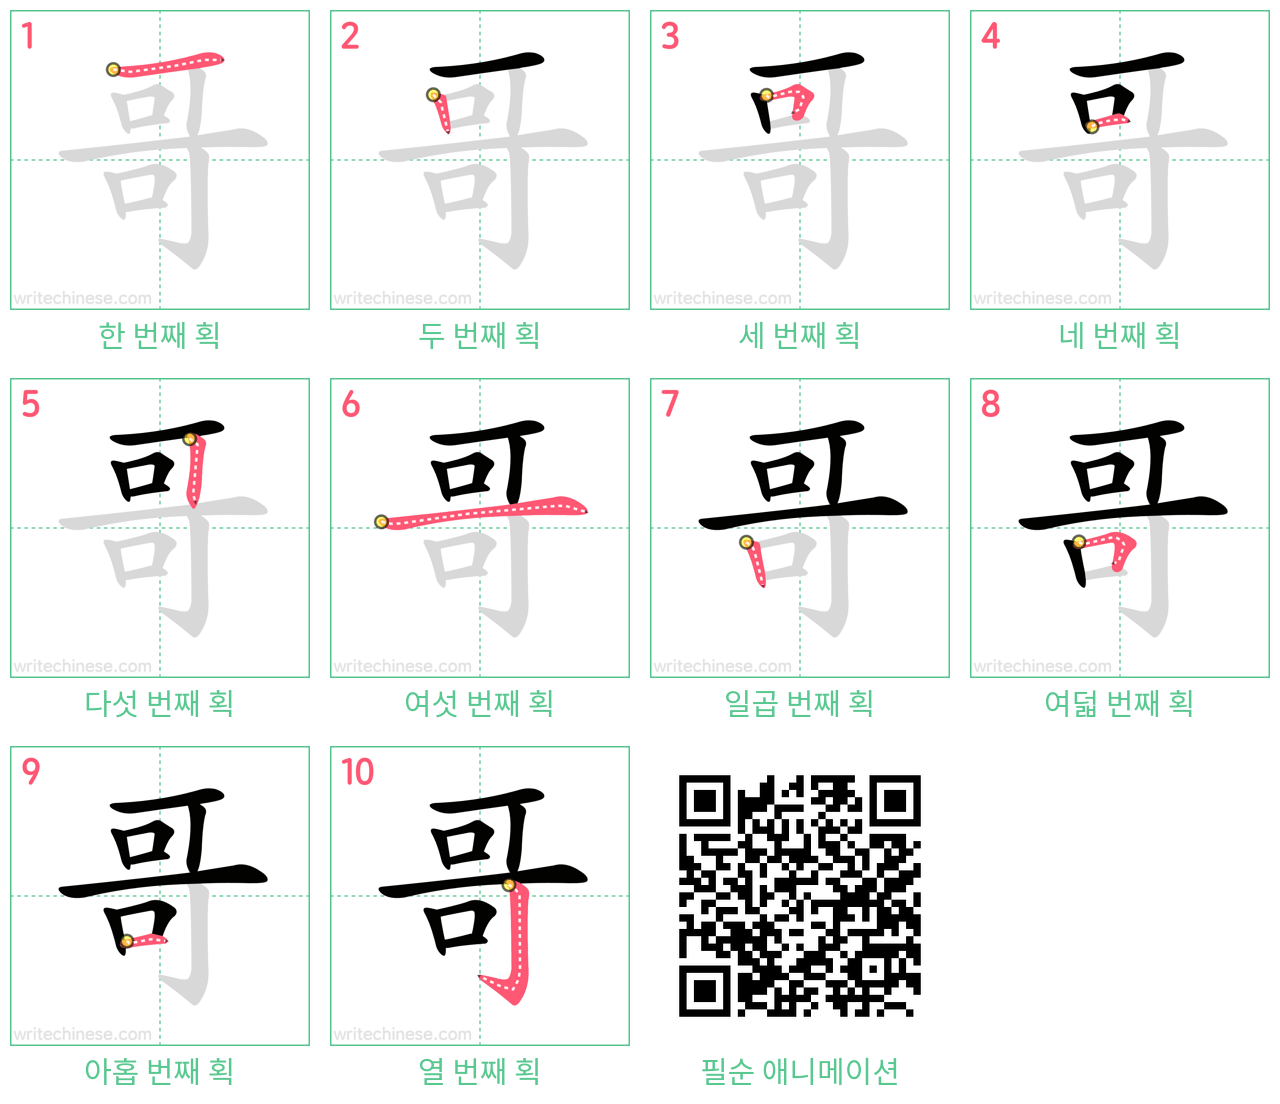 哥 step-by-step stroke order diagrams